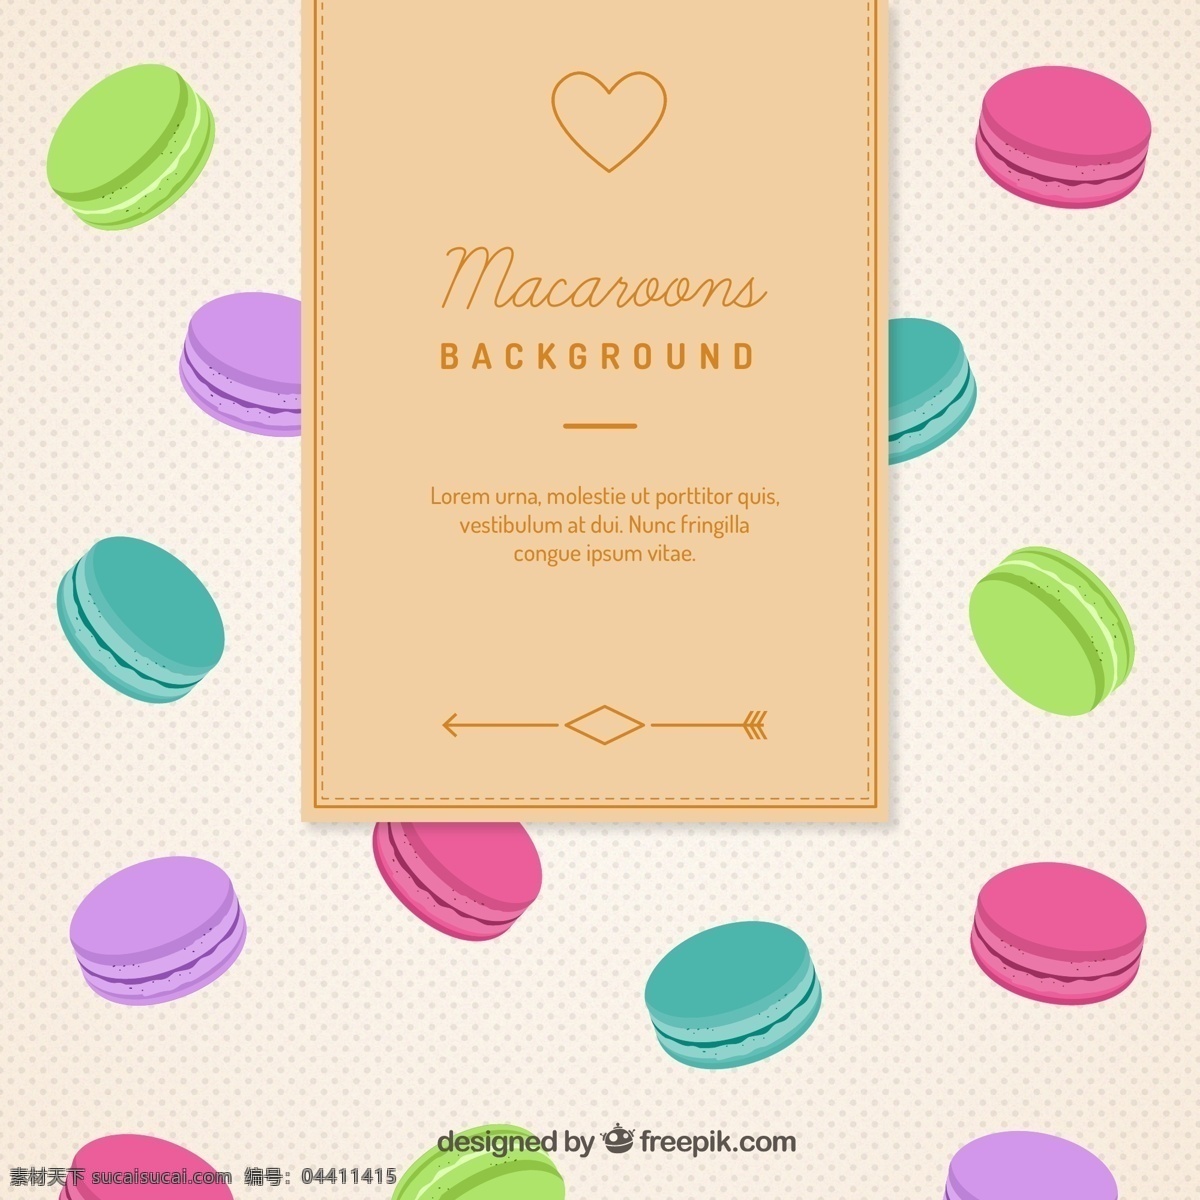 彩色 马卡 龙背 景 矢量 法式甜点 烘培食品 马卡龙 背景 水玉点 爱心 矢量图